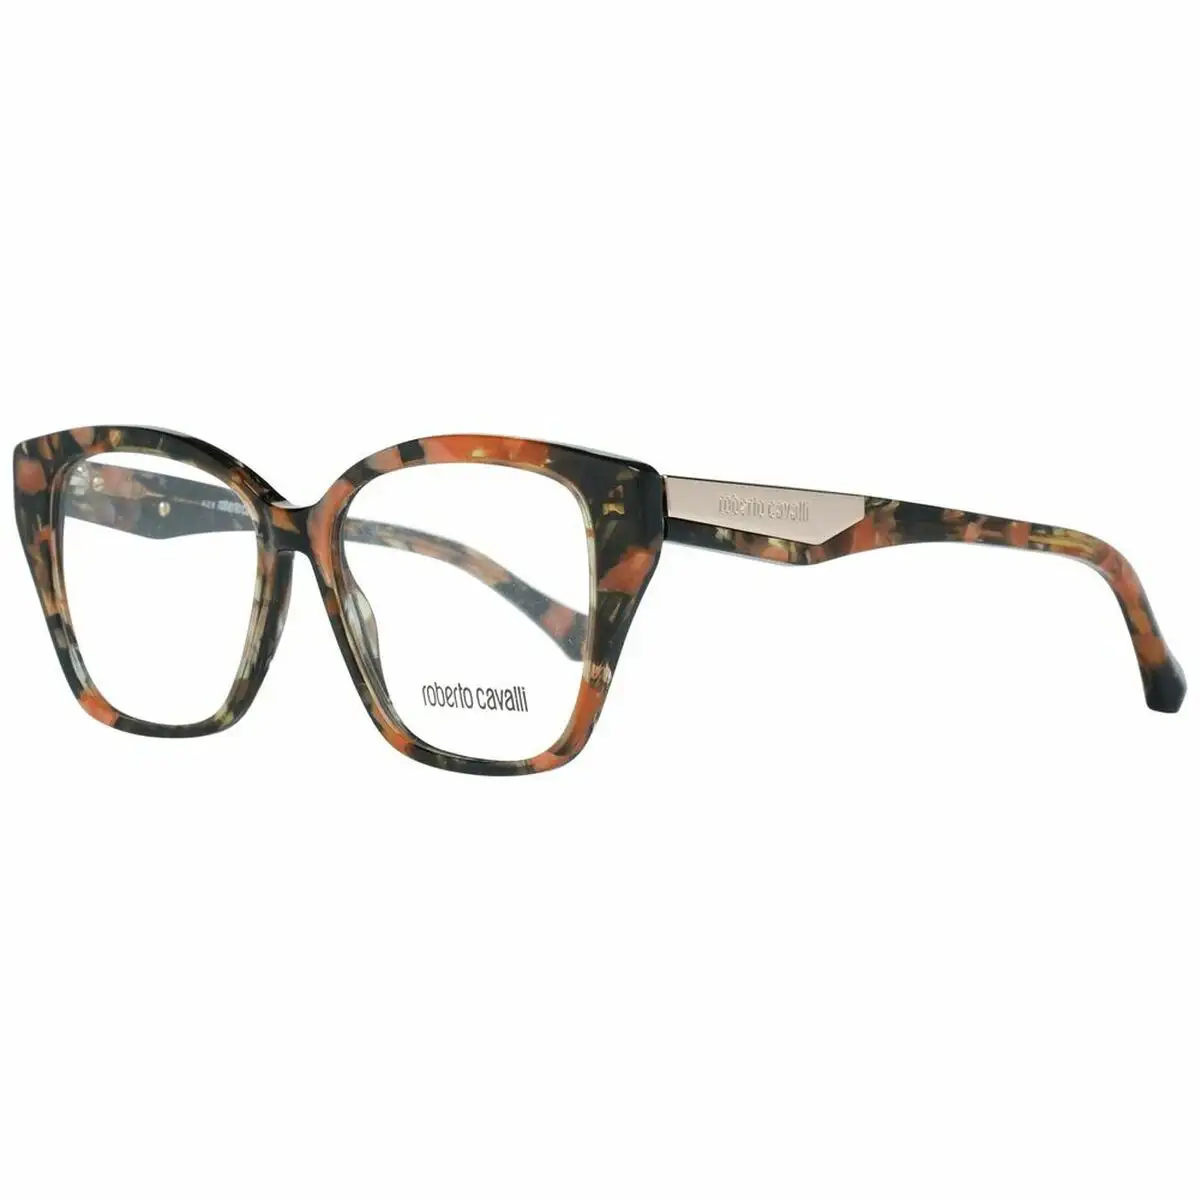 Monture de lunettes femme roberto cavalli rc5083 53055 multicouleur o 53 mm _4961. Bienvenue chez DIAYTAR SENEGAL - Où Chaque Produit a son Âme. Découvrez notre gamme et choisissez des articles qui résonnent avec votre personnalité et vos valeurs.